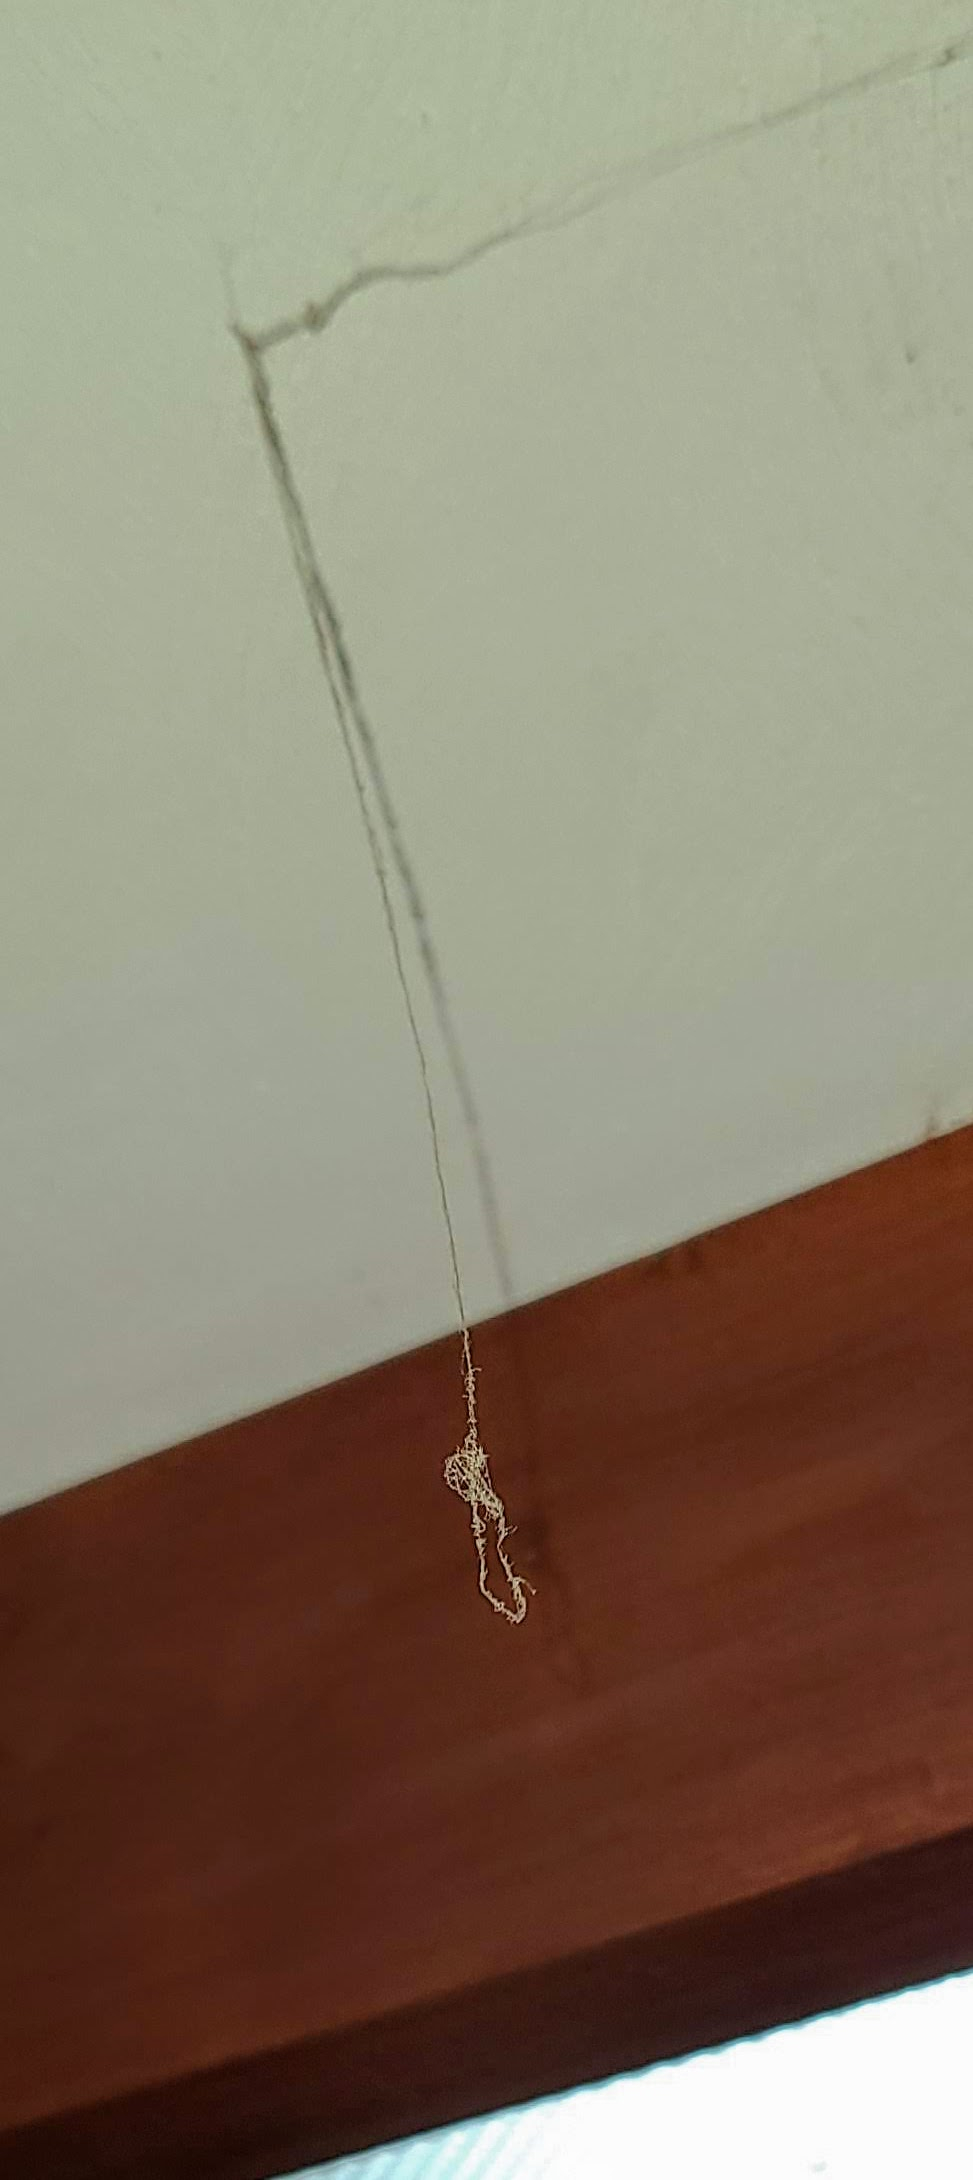 Spider Noose.jpg